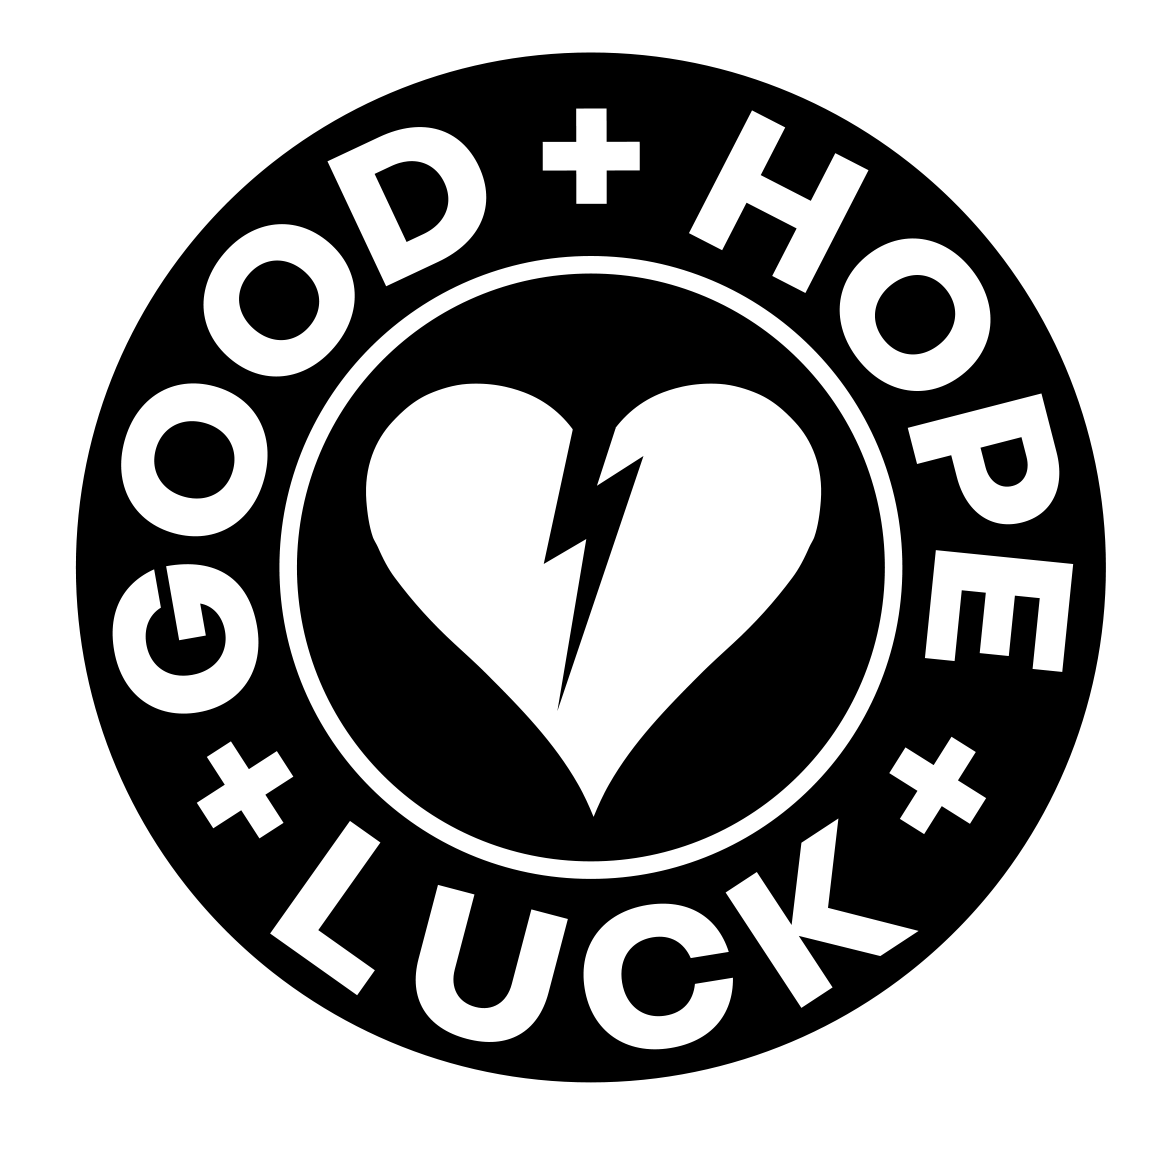 Good Hope & Luck